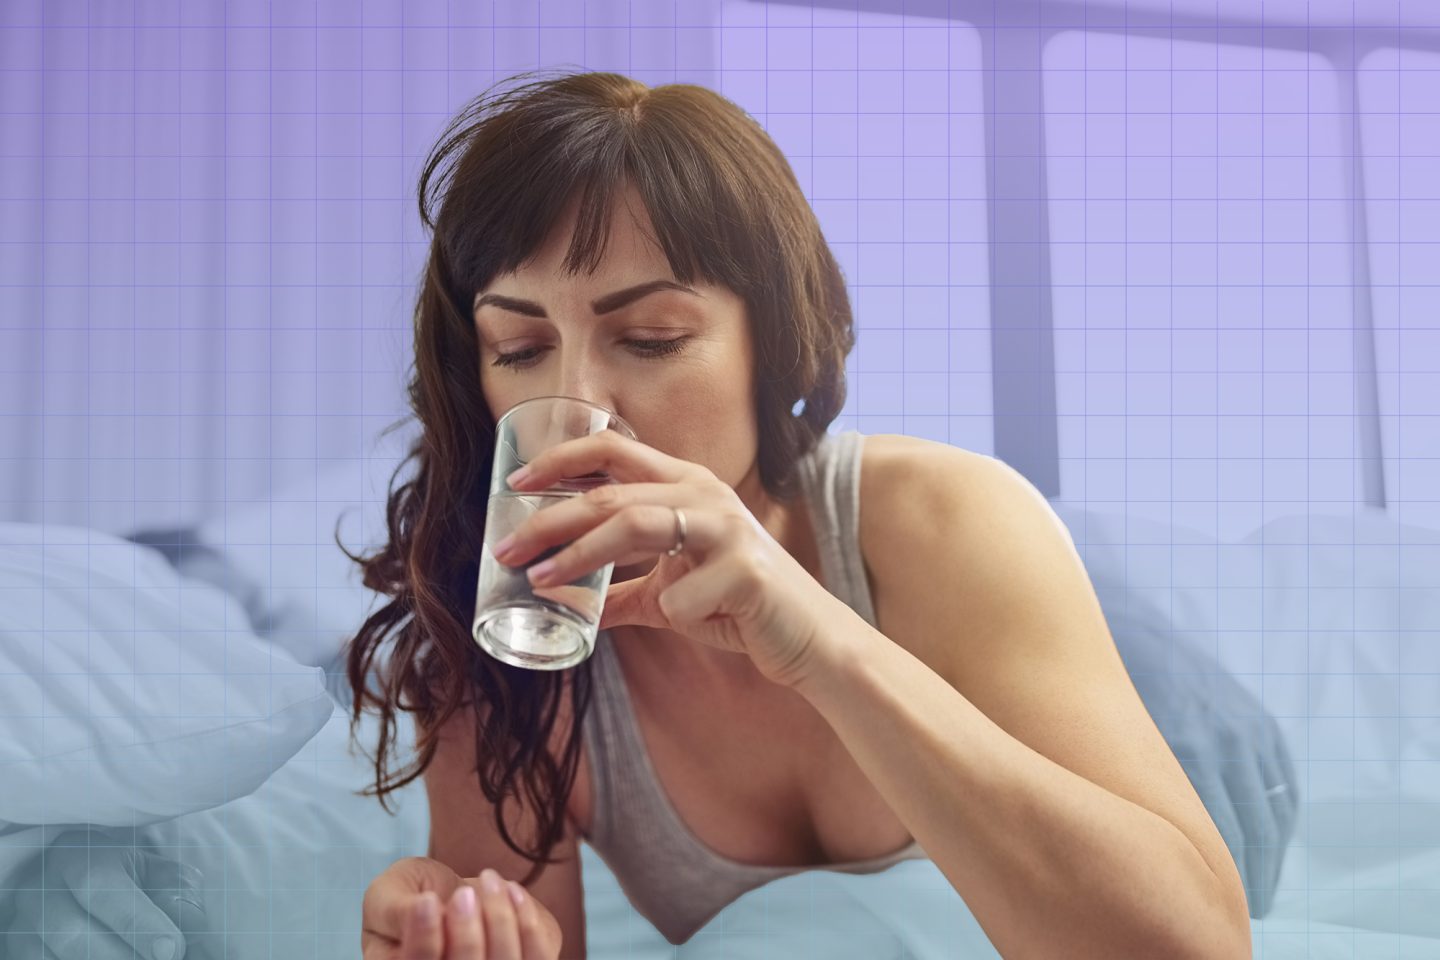 عدم شرب كميات كافية من الماء يرتبط بمشكلات صحية خطيرة